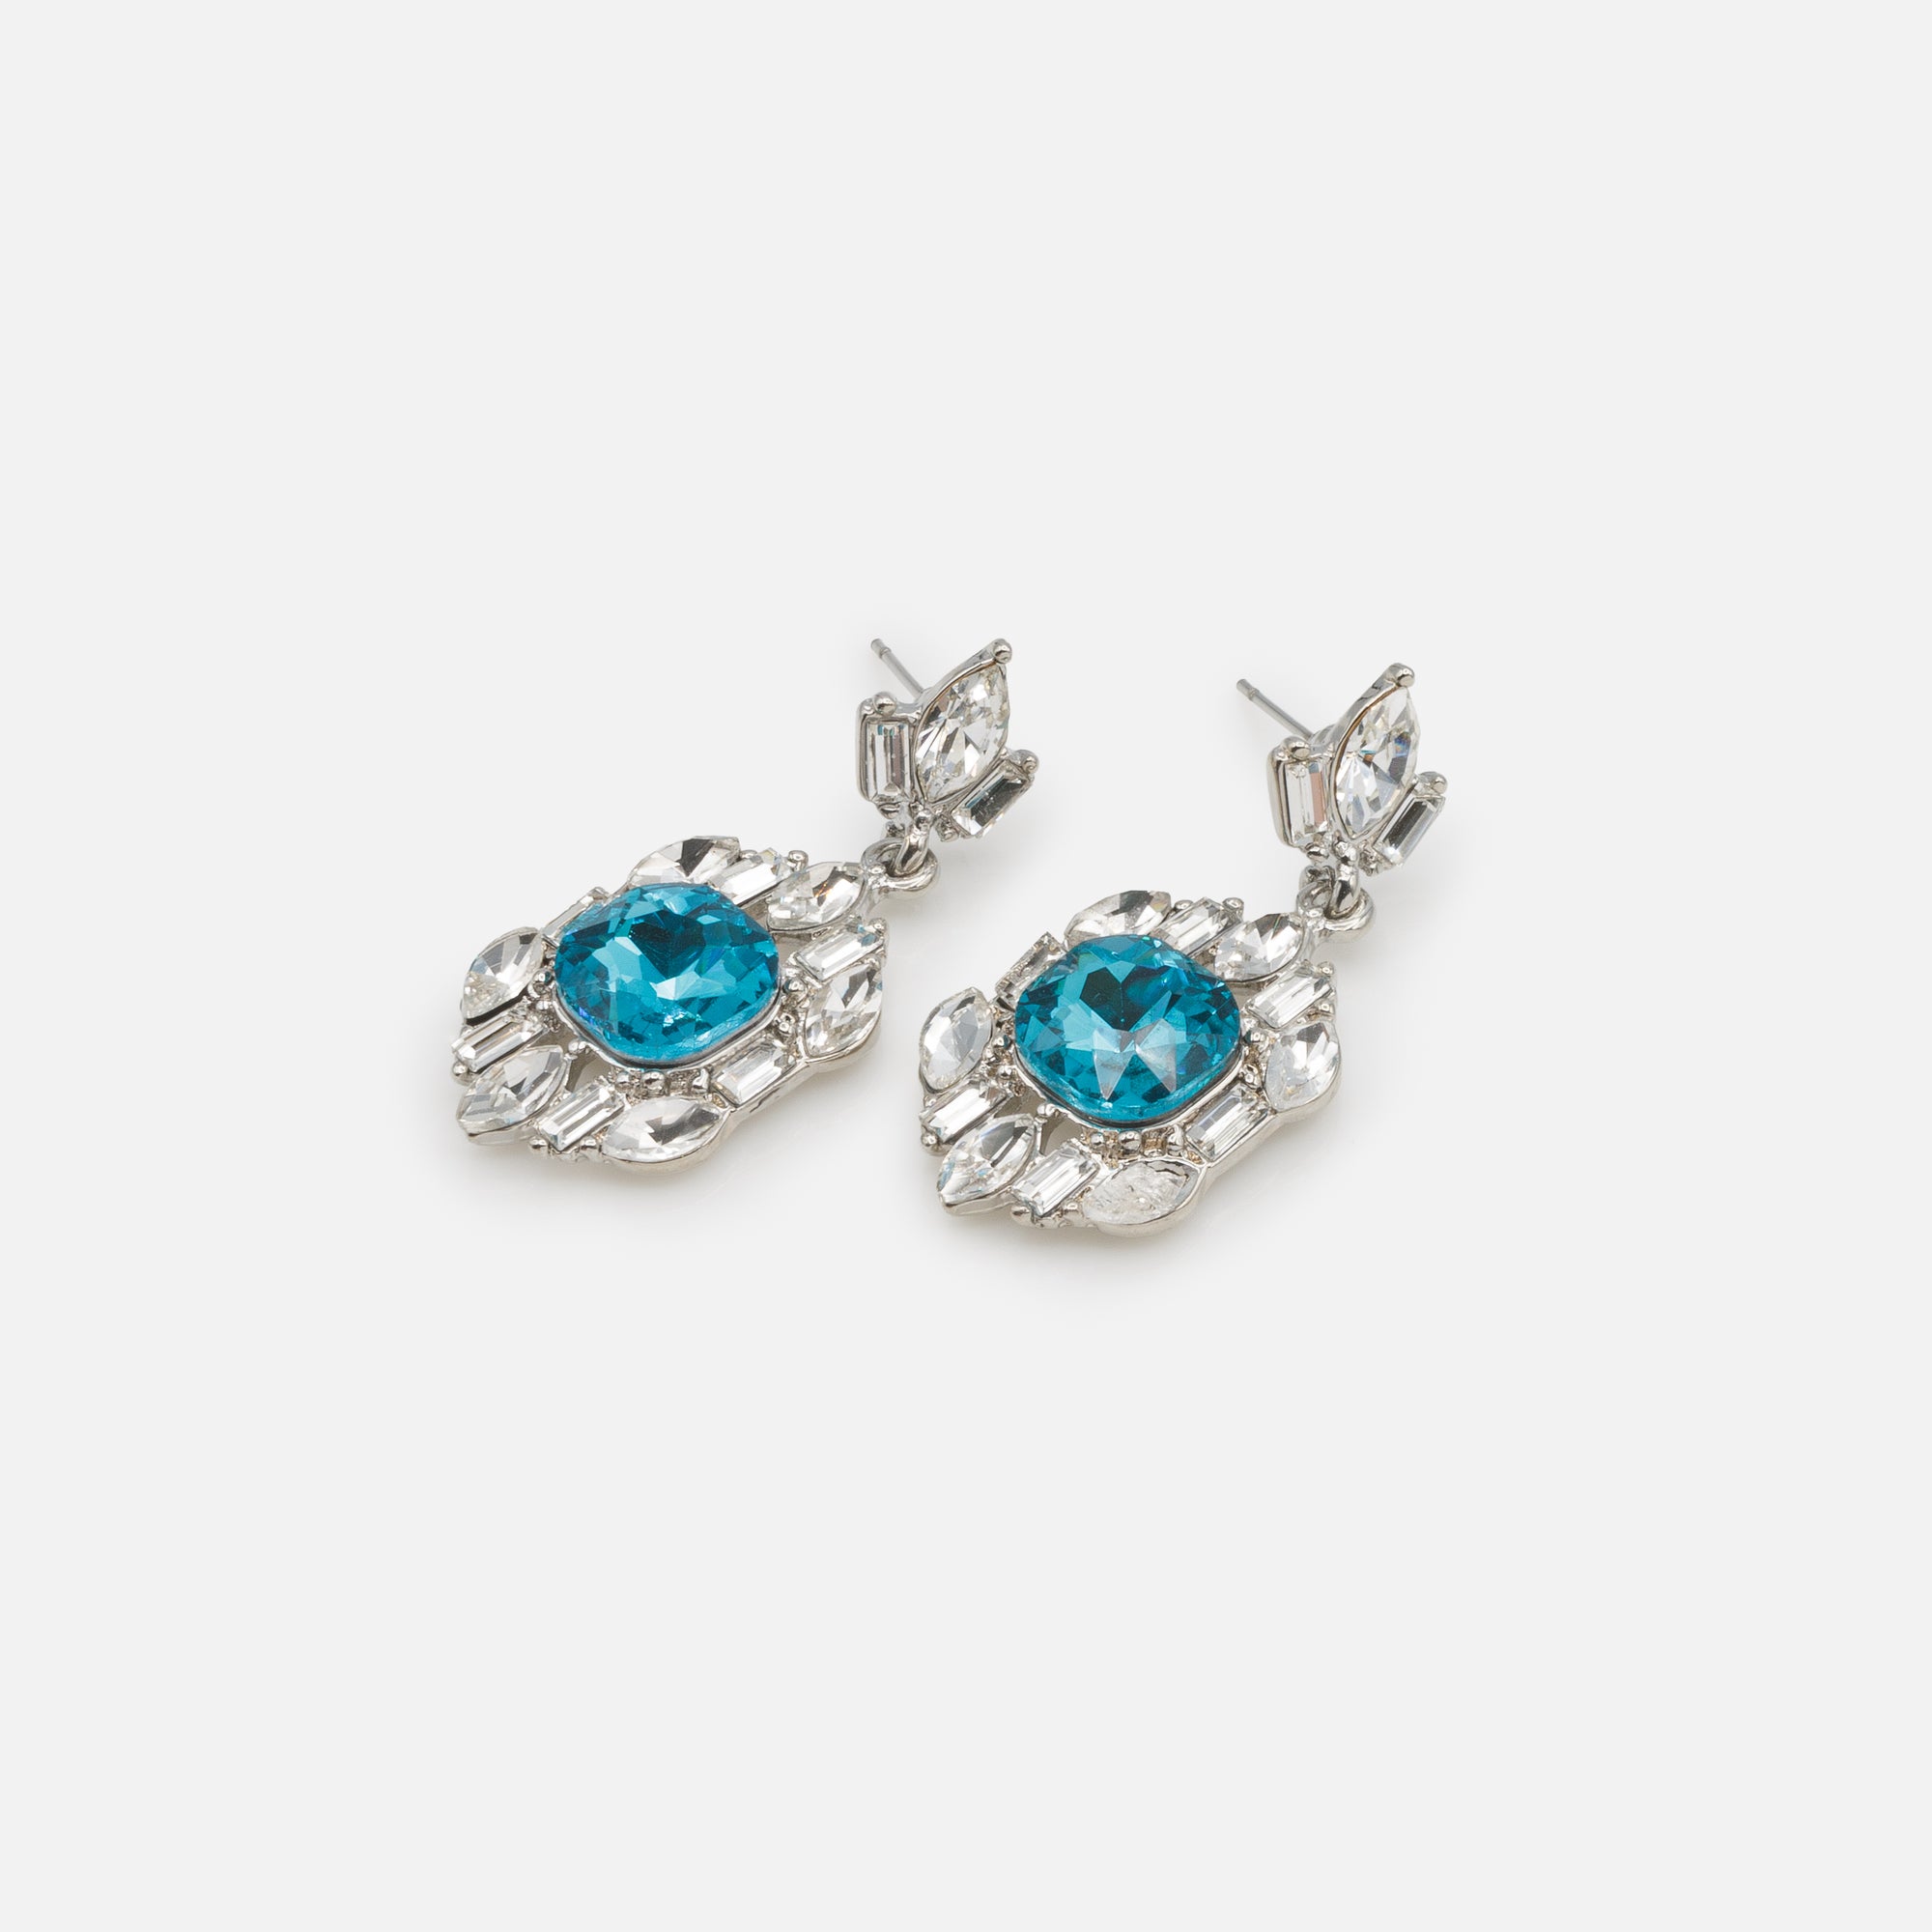 Ensemble collier et boucles d'oreilles pendantes argentés avec pierres blanches et turquoise